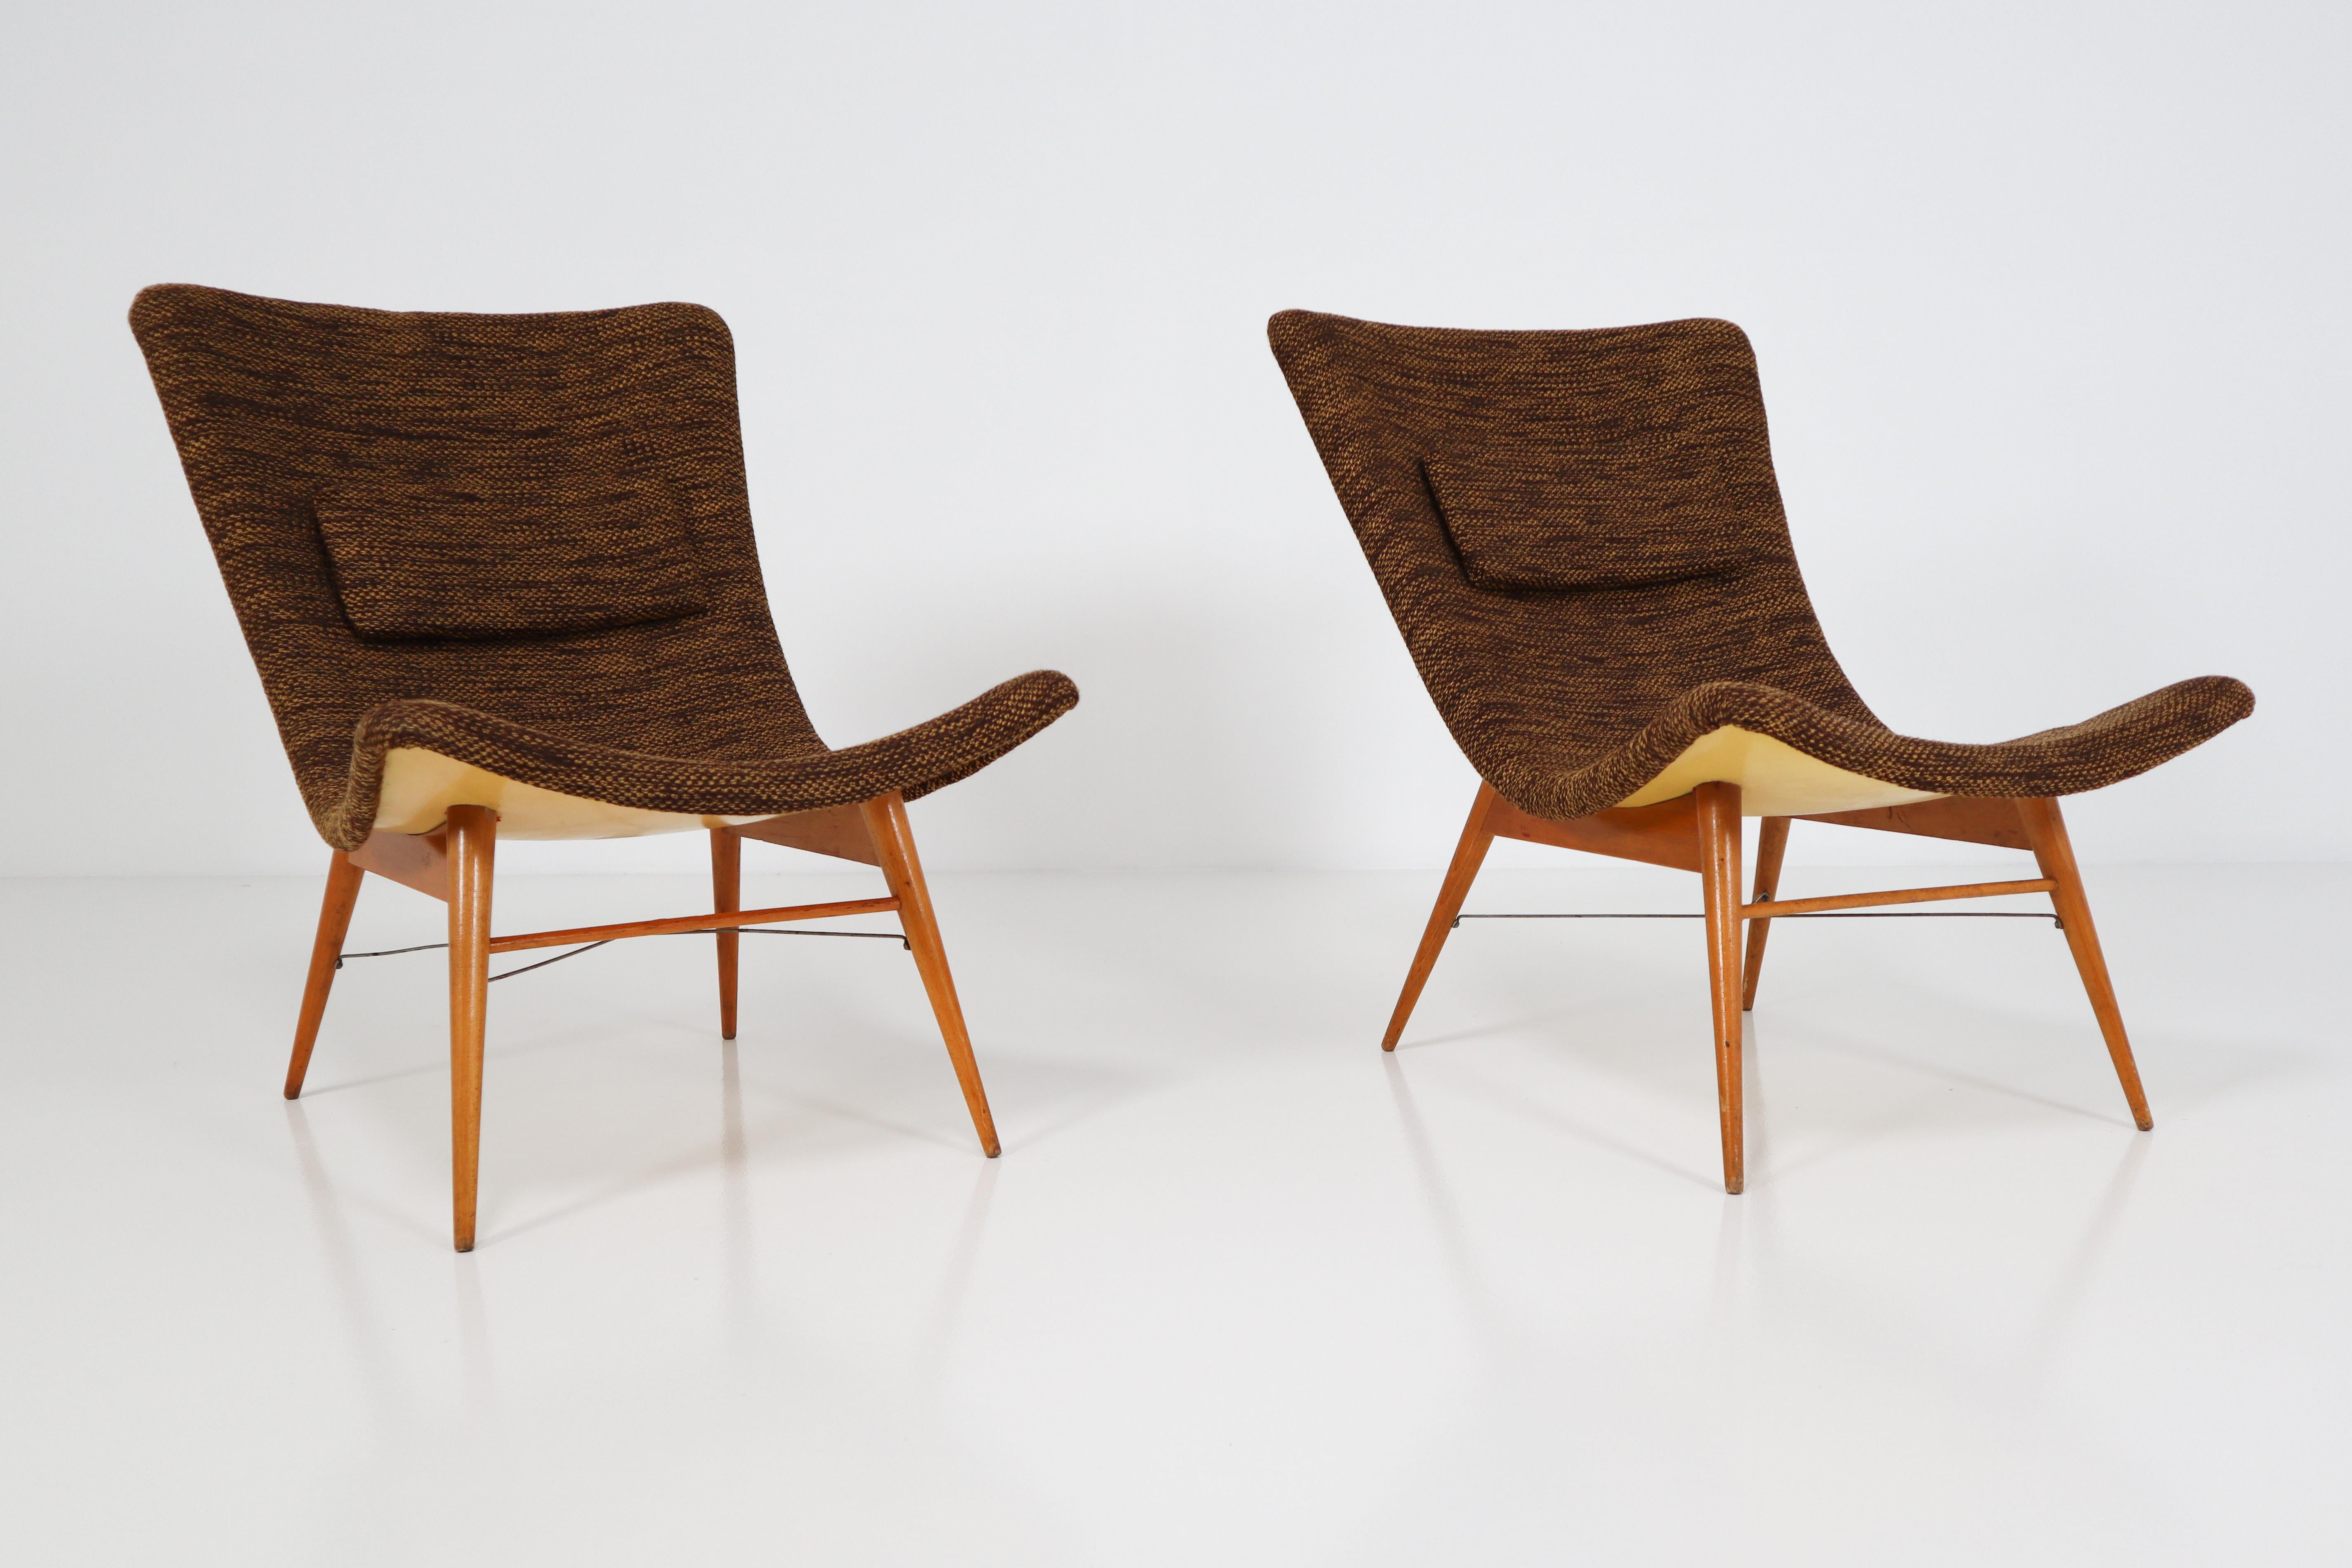 Czech Mid-Century Modern Fiberglass Lounge Chairs by Miroslav Navratil CZ, 1959